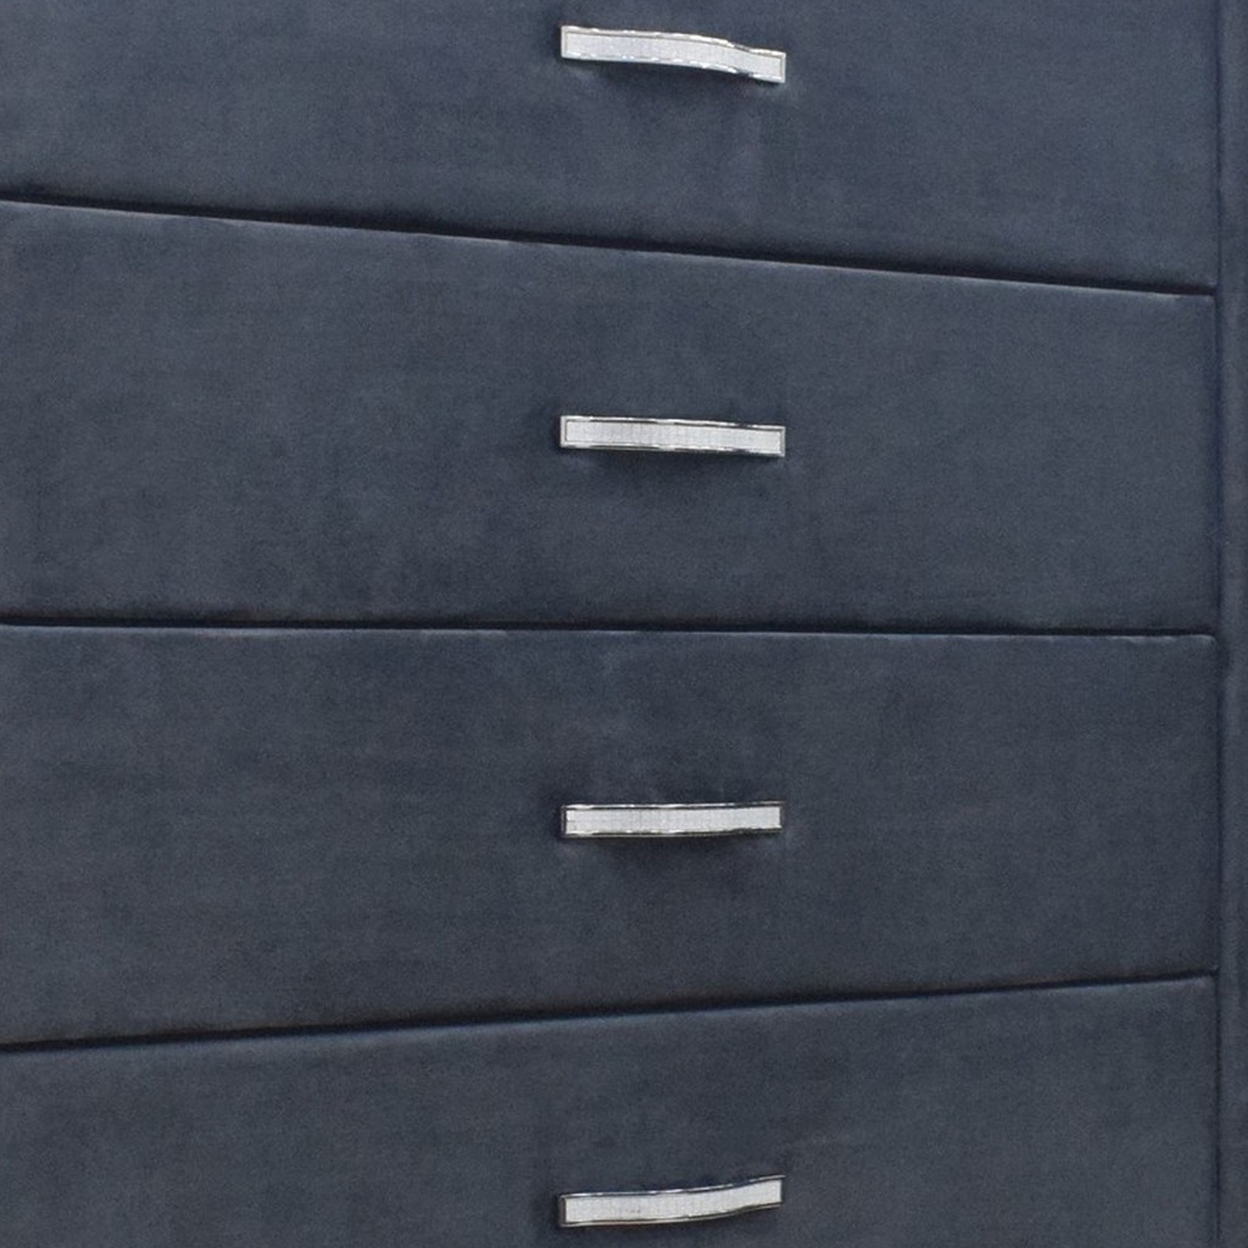 Moha 50 Inch Tall 5 Drawer Dresser Chest, Glass Top Gray Velvet Upholstered- Saltoro Sherpi